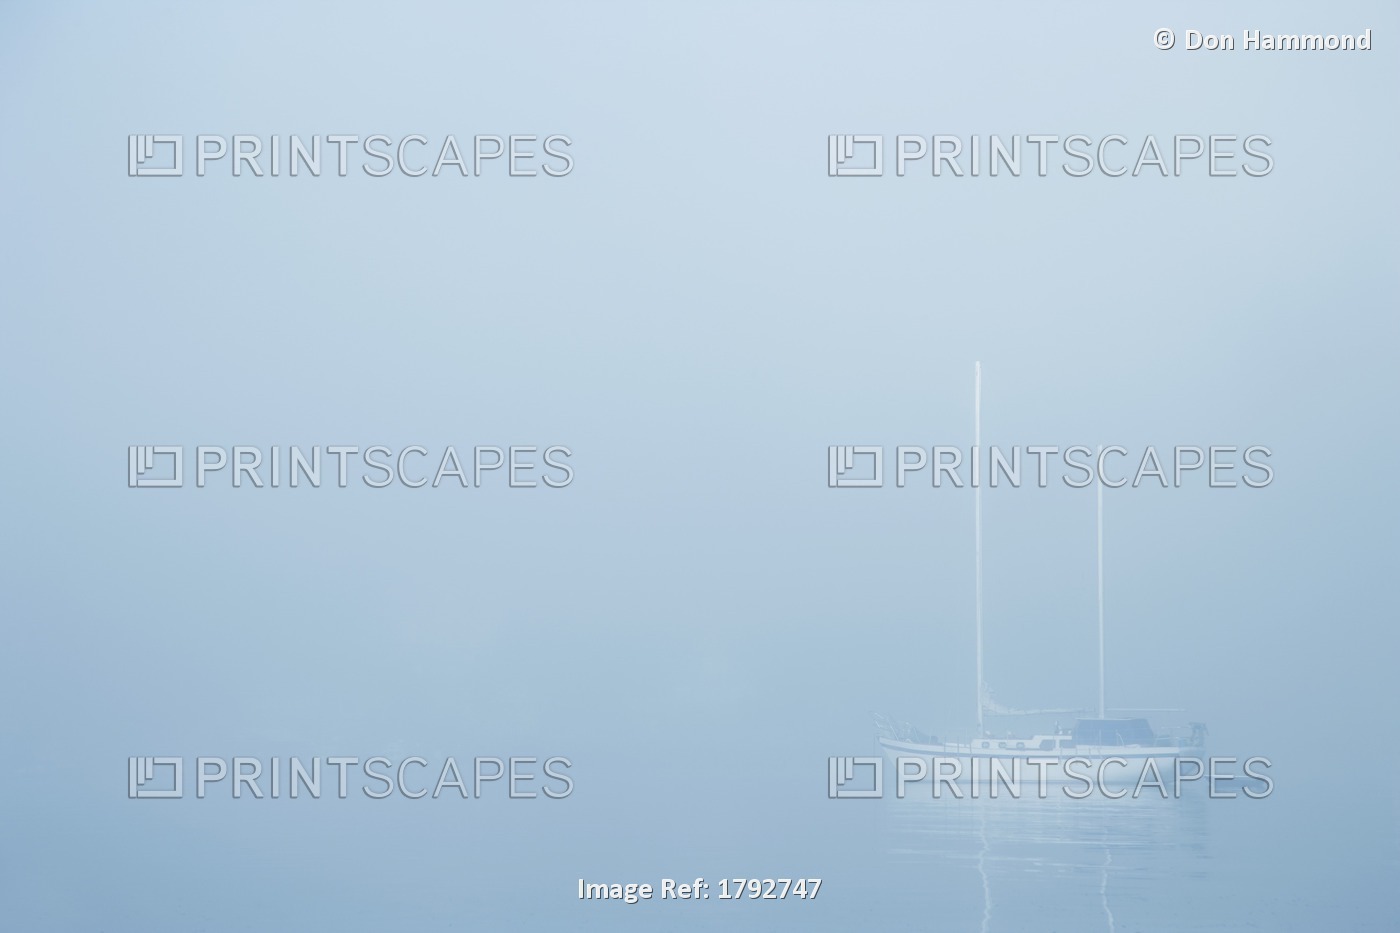 Sailboat In A Fog